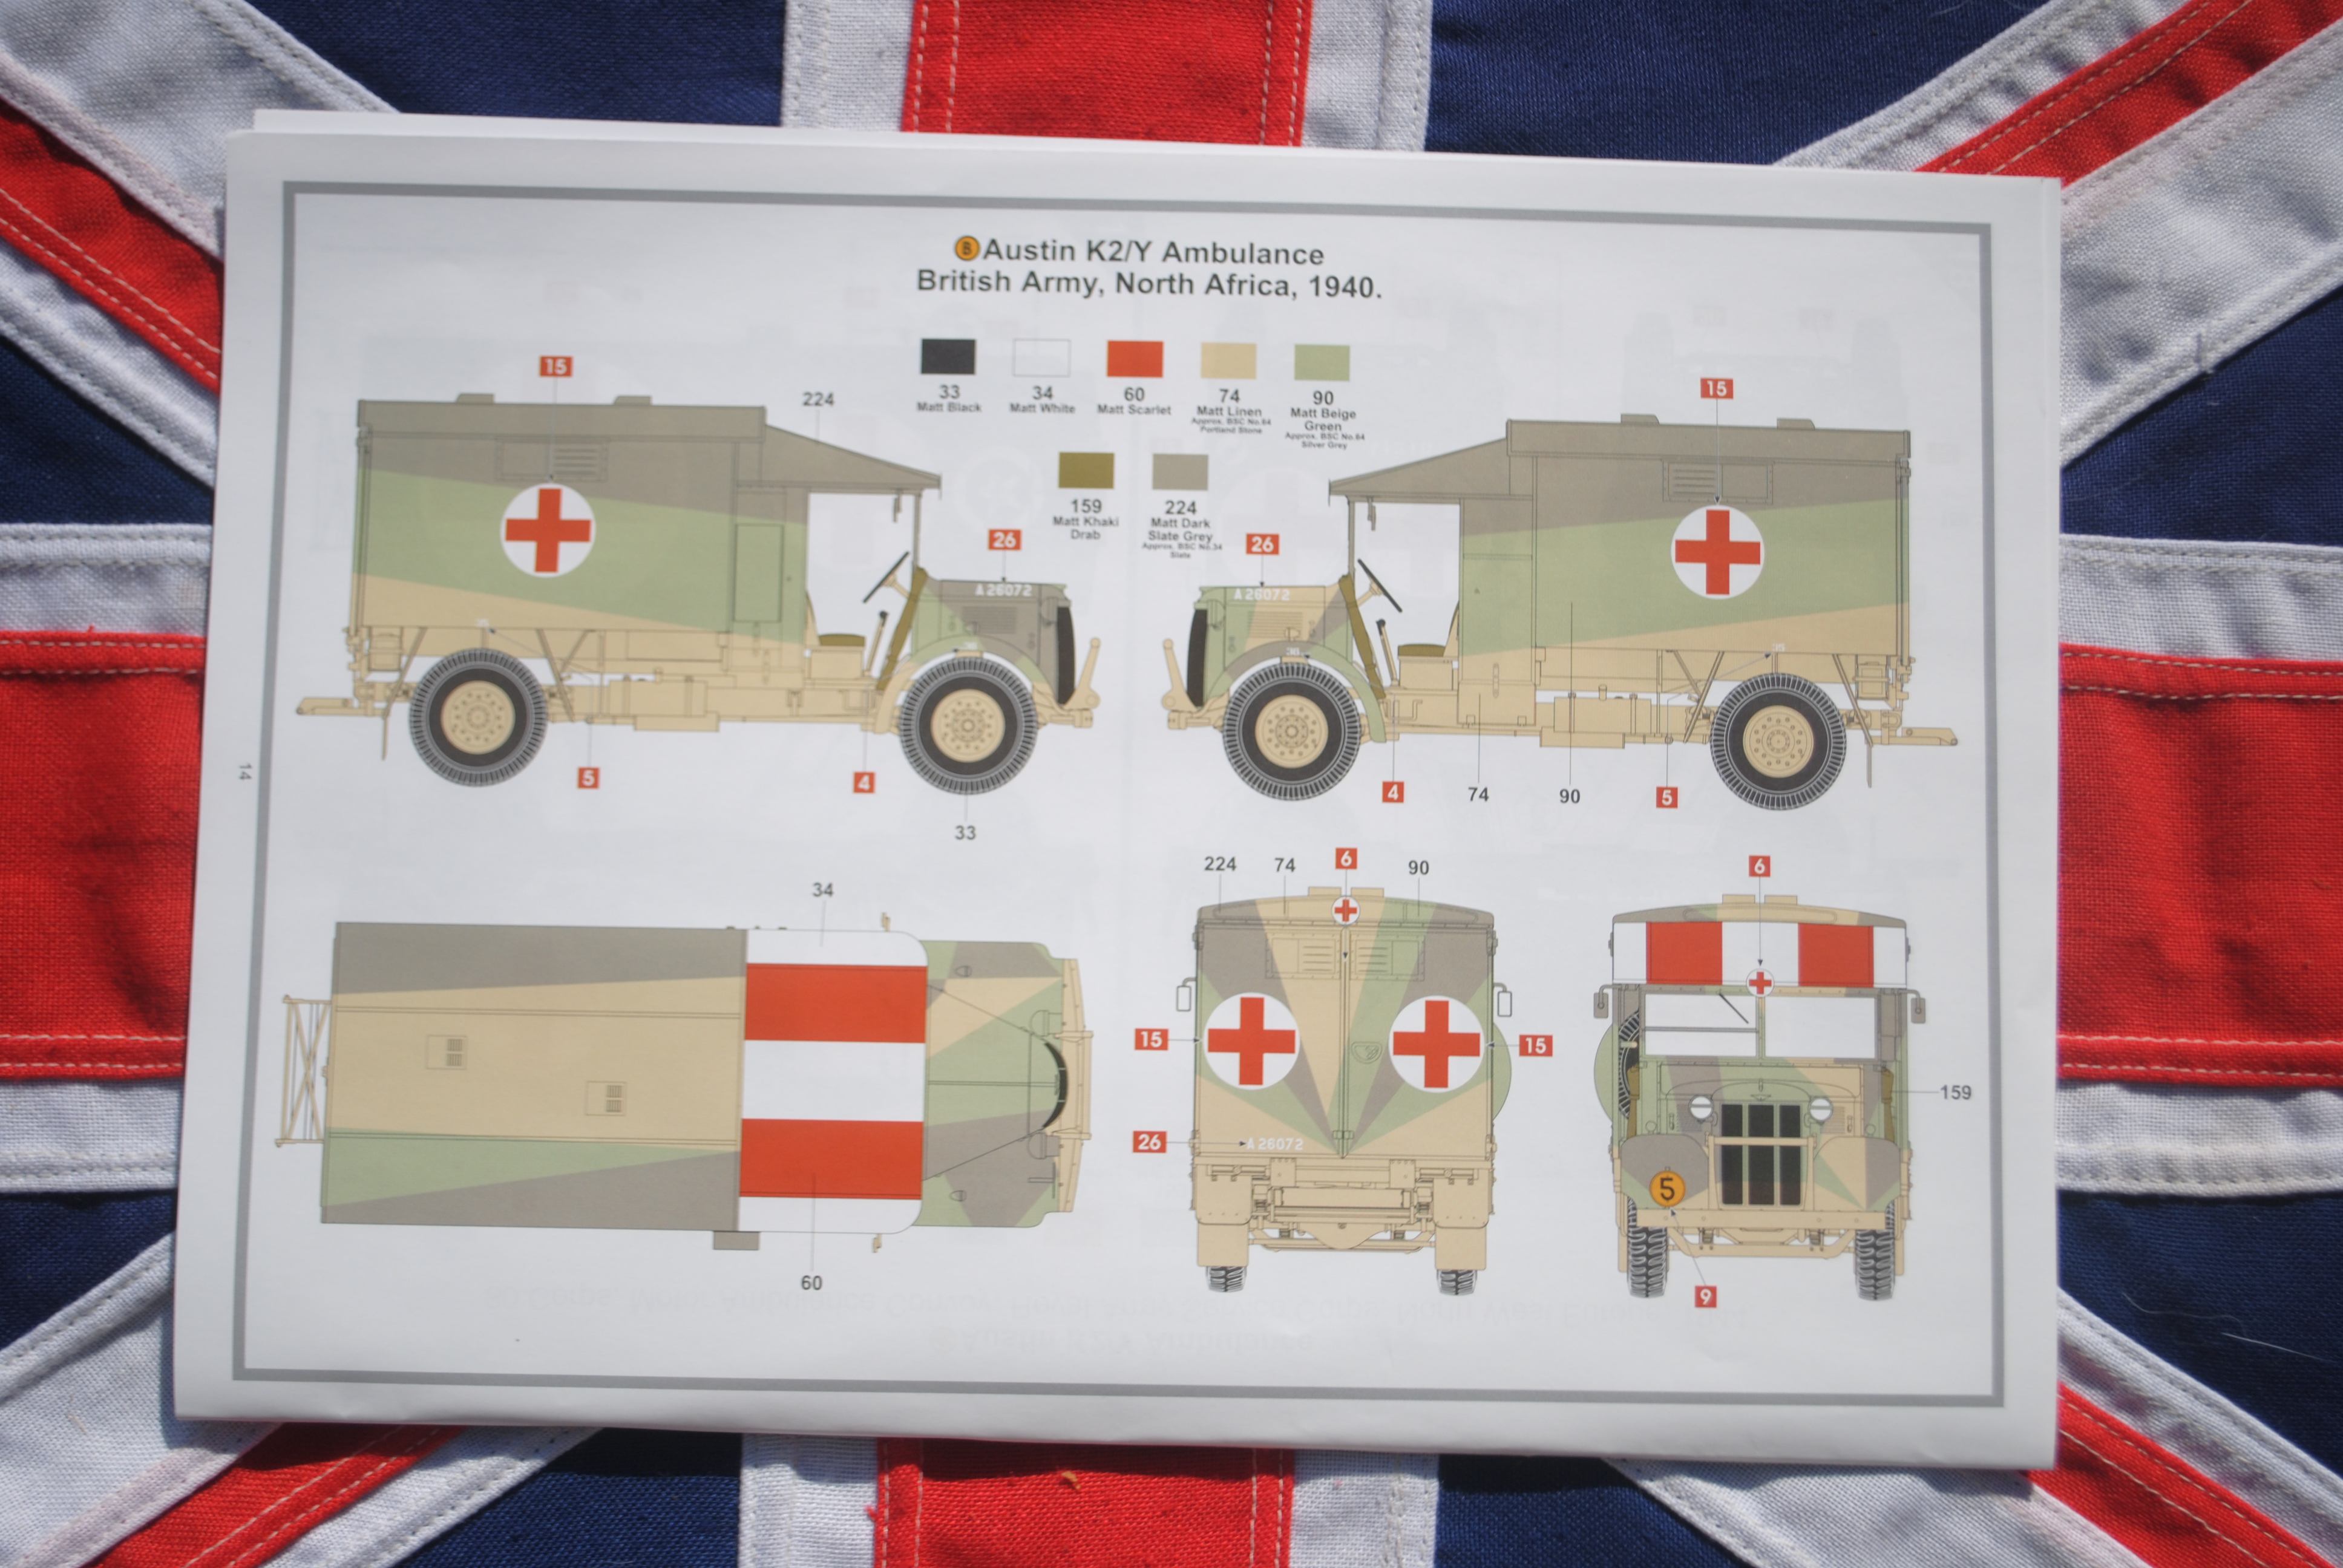 Airfix A1375 British Army Austin K2/Y Ambulance